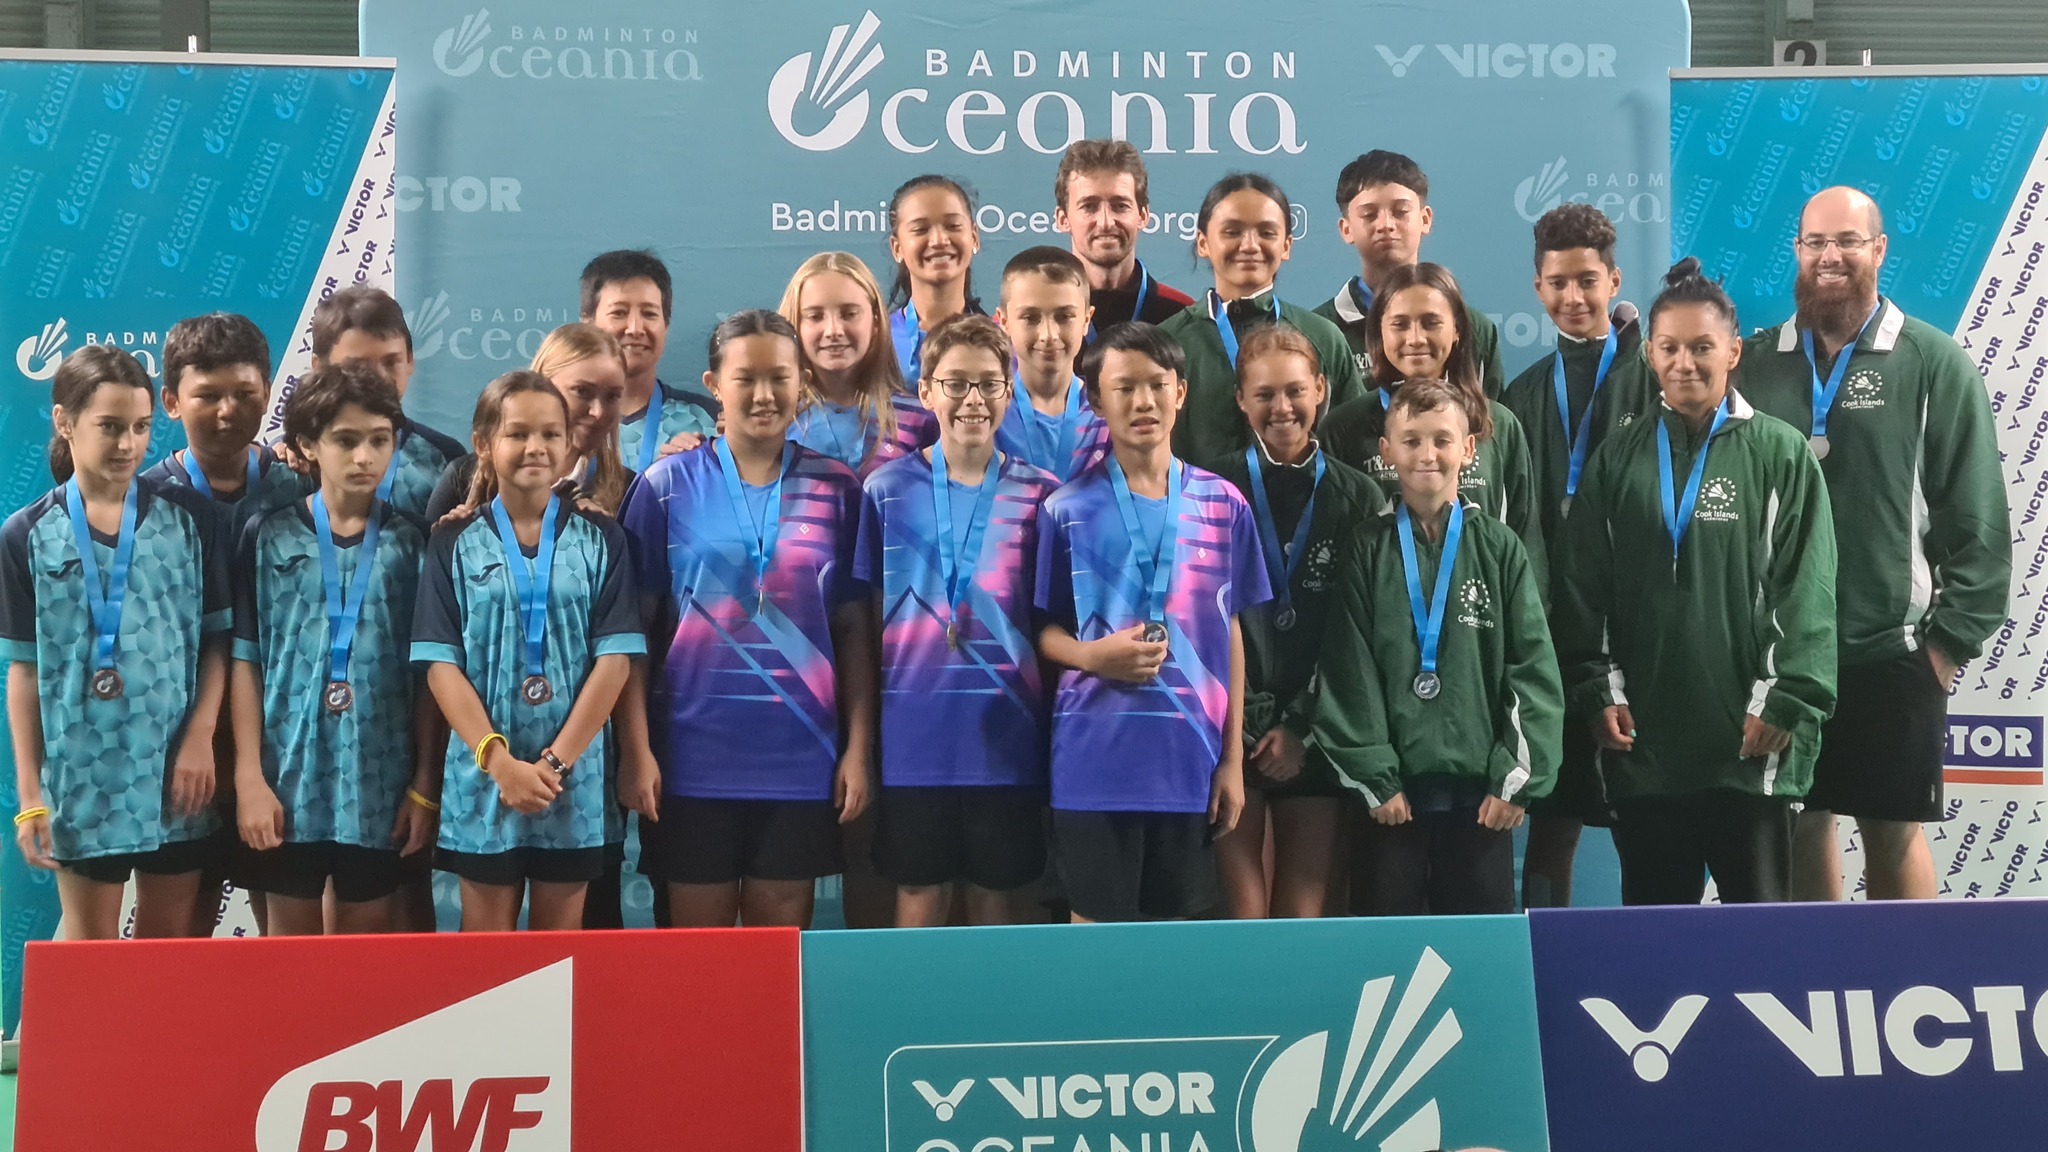 La sélection U15 qui a remporté l'or, samedi, au tournoi par équipe des Oceania. (Photo : Badminton Oceania)